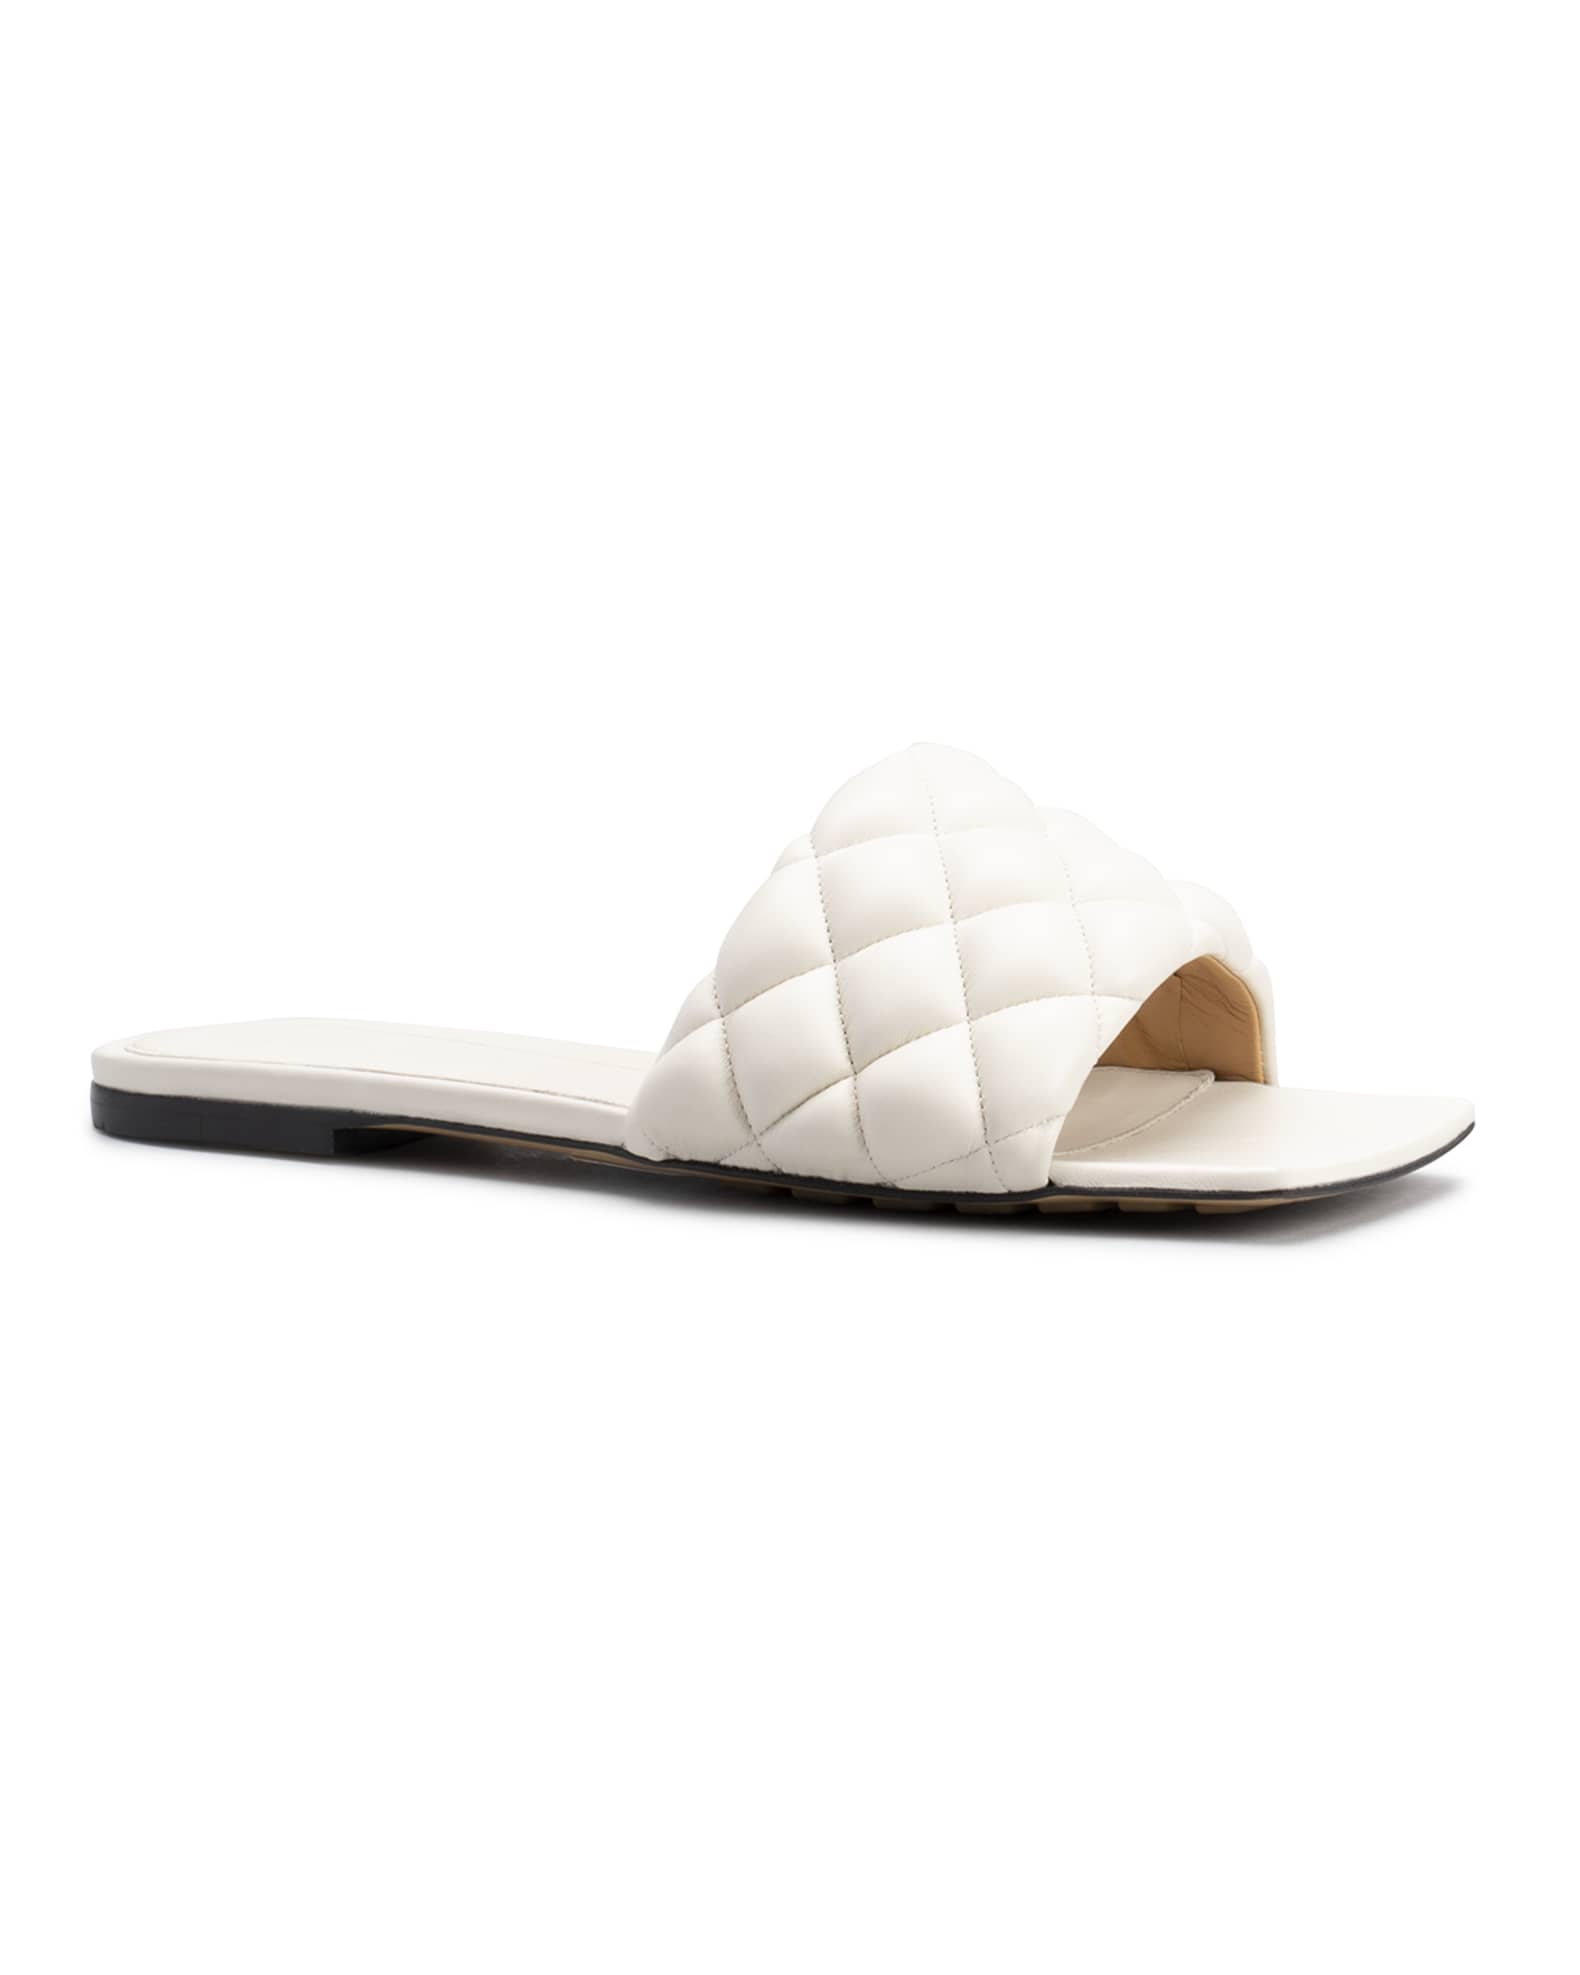 White Bottega Veneta slide sandals